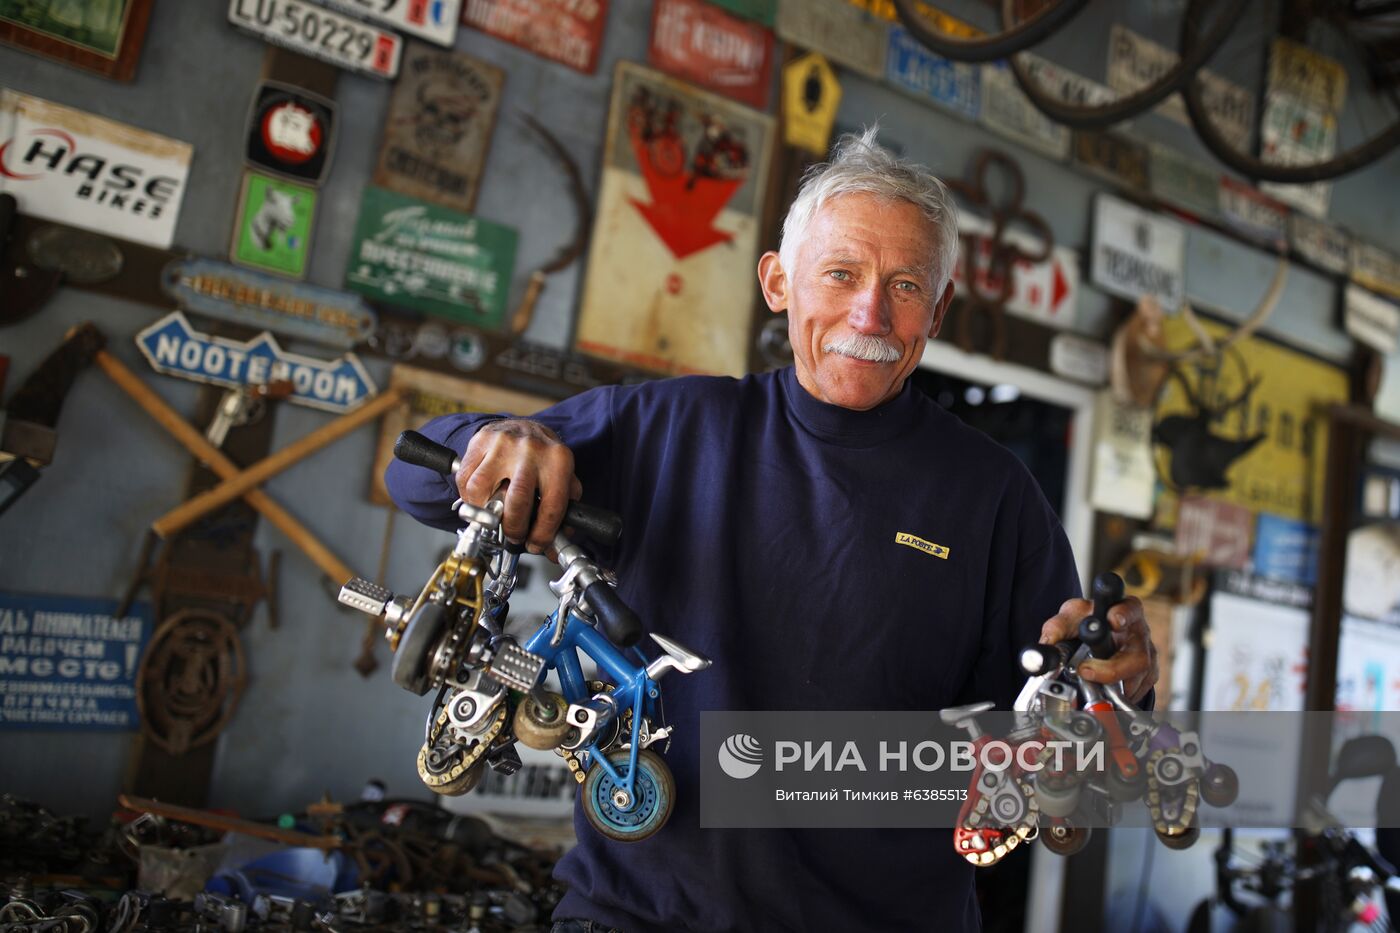 Изобретатель из Краснодарского края создает оригинальные модели велосипедов